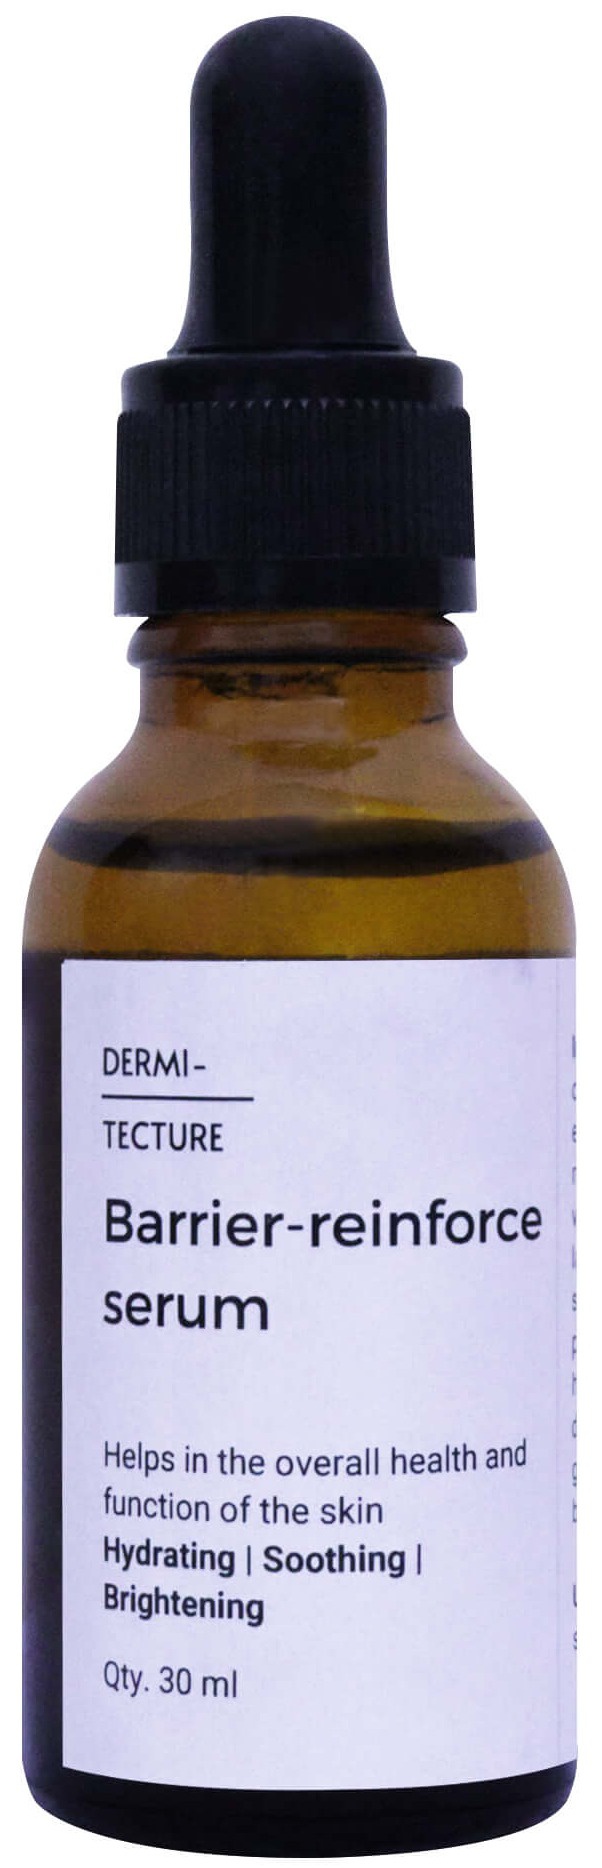 Dermitecture Barrier Reinforce Serum